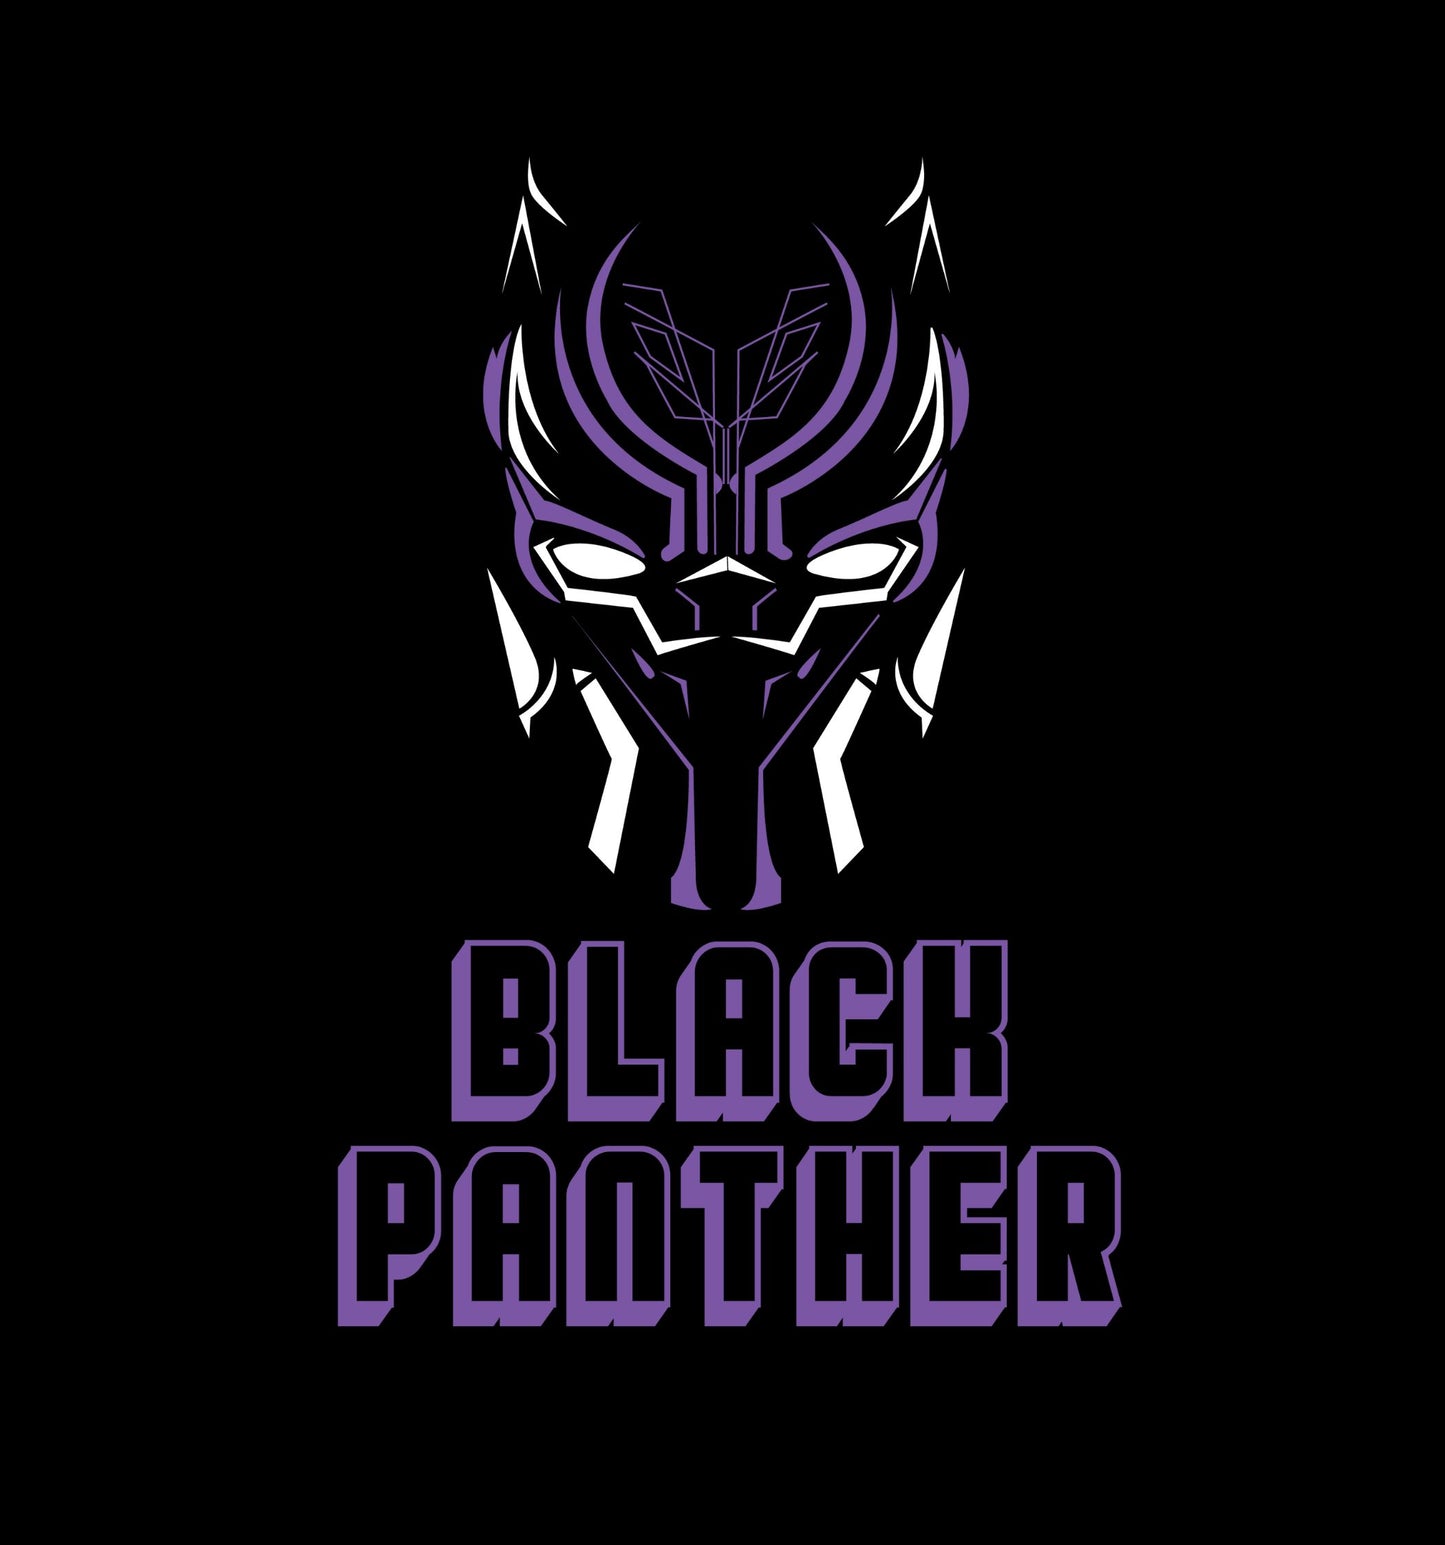 Black Panther - Wakanda Forever - Full Back Print Superhero Oversized T-Shirt In Black - Mon Zurich Fan-Art